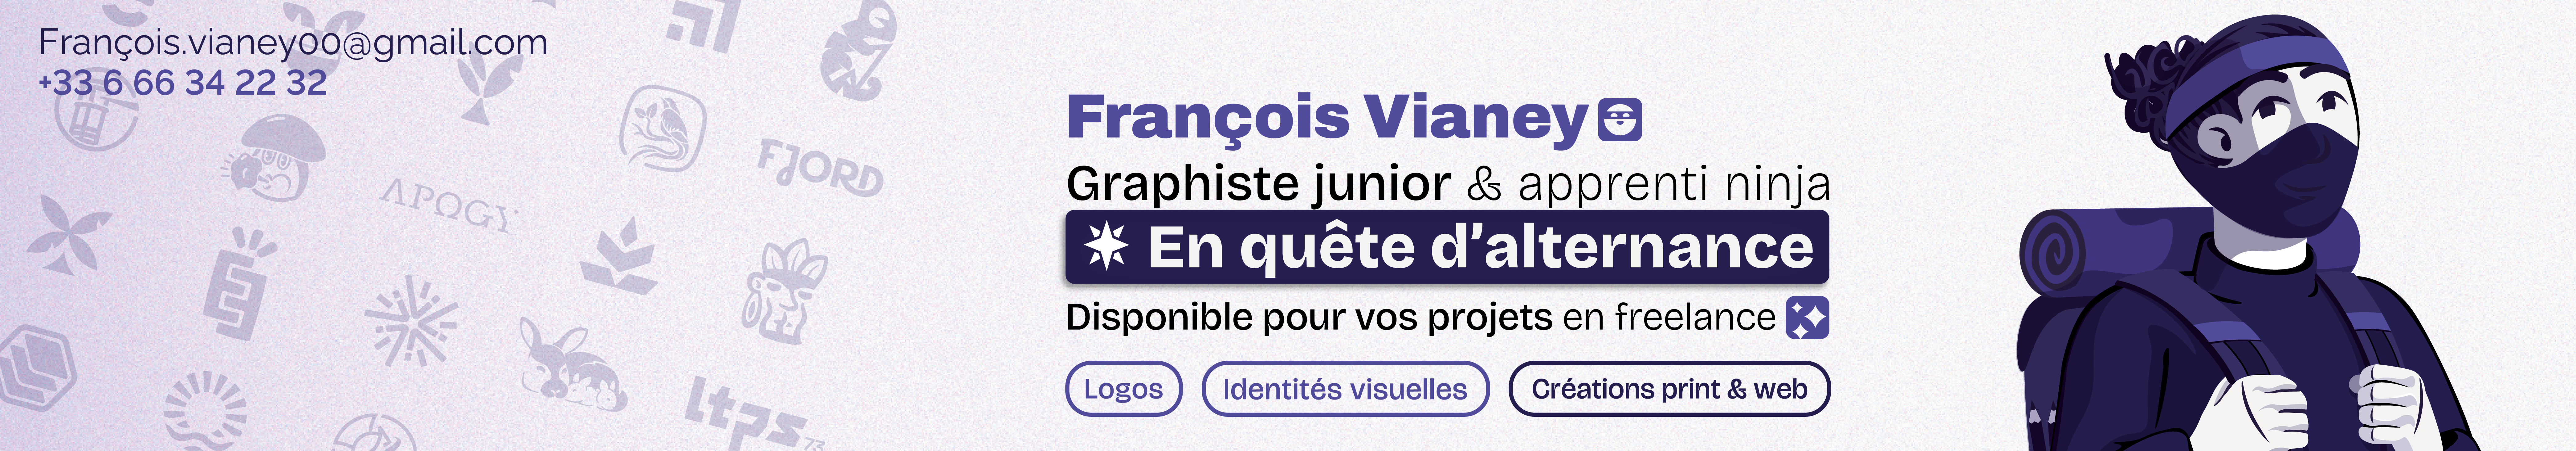 François Vianey's profile banner